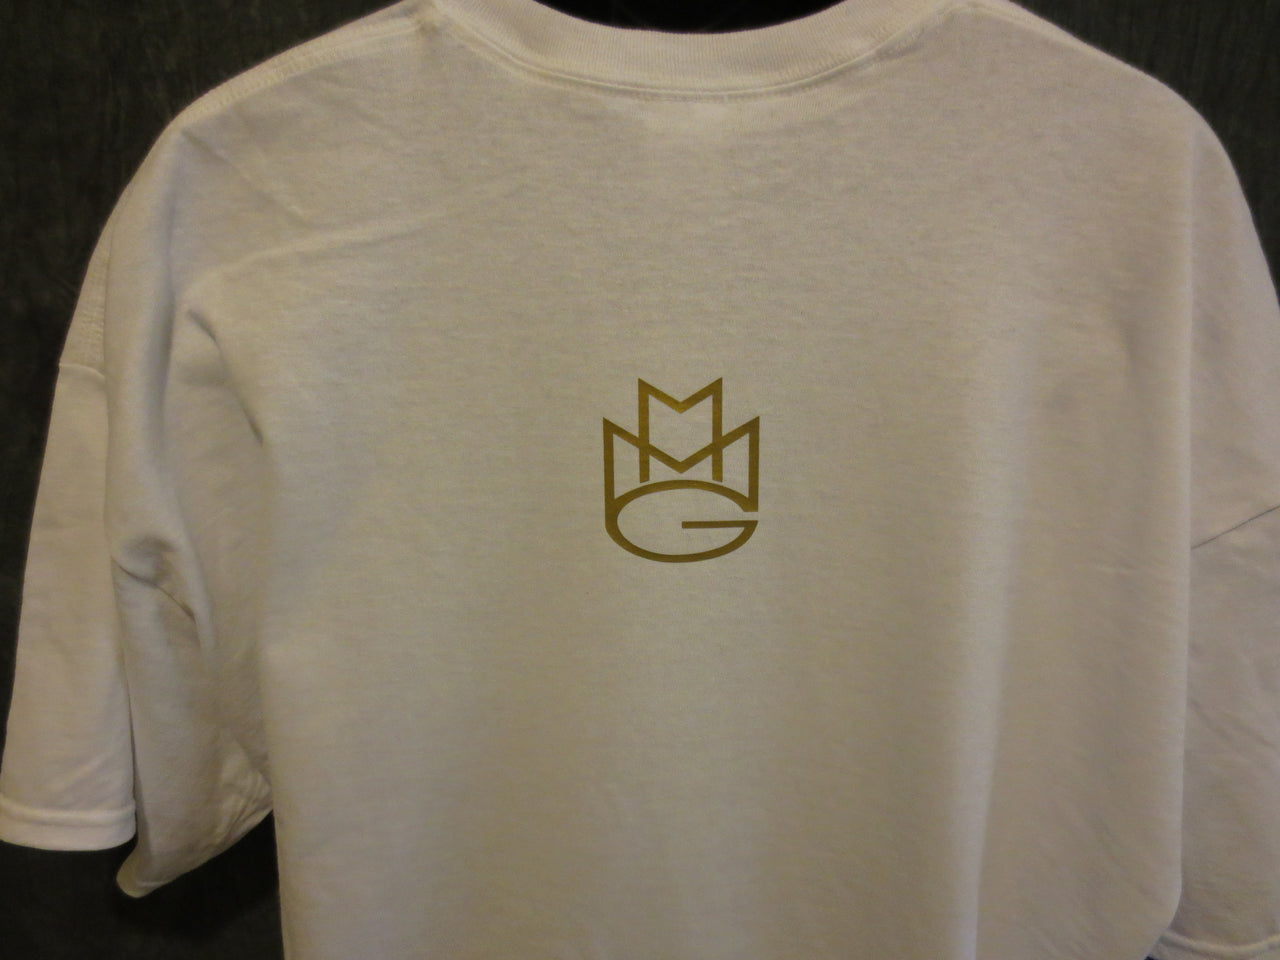 Maybach Music Group Tshirt: White Tshirt with Gold Print - TshirtNow.net - 15